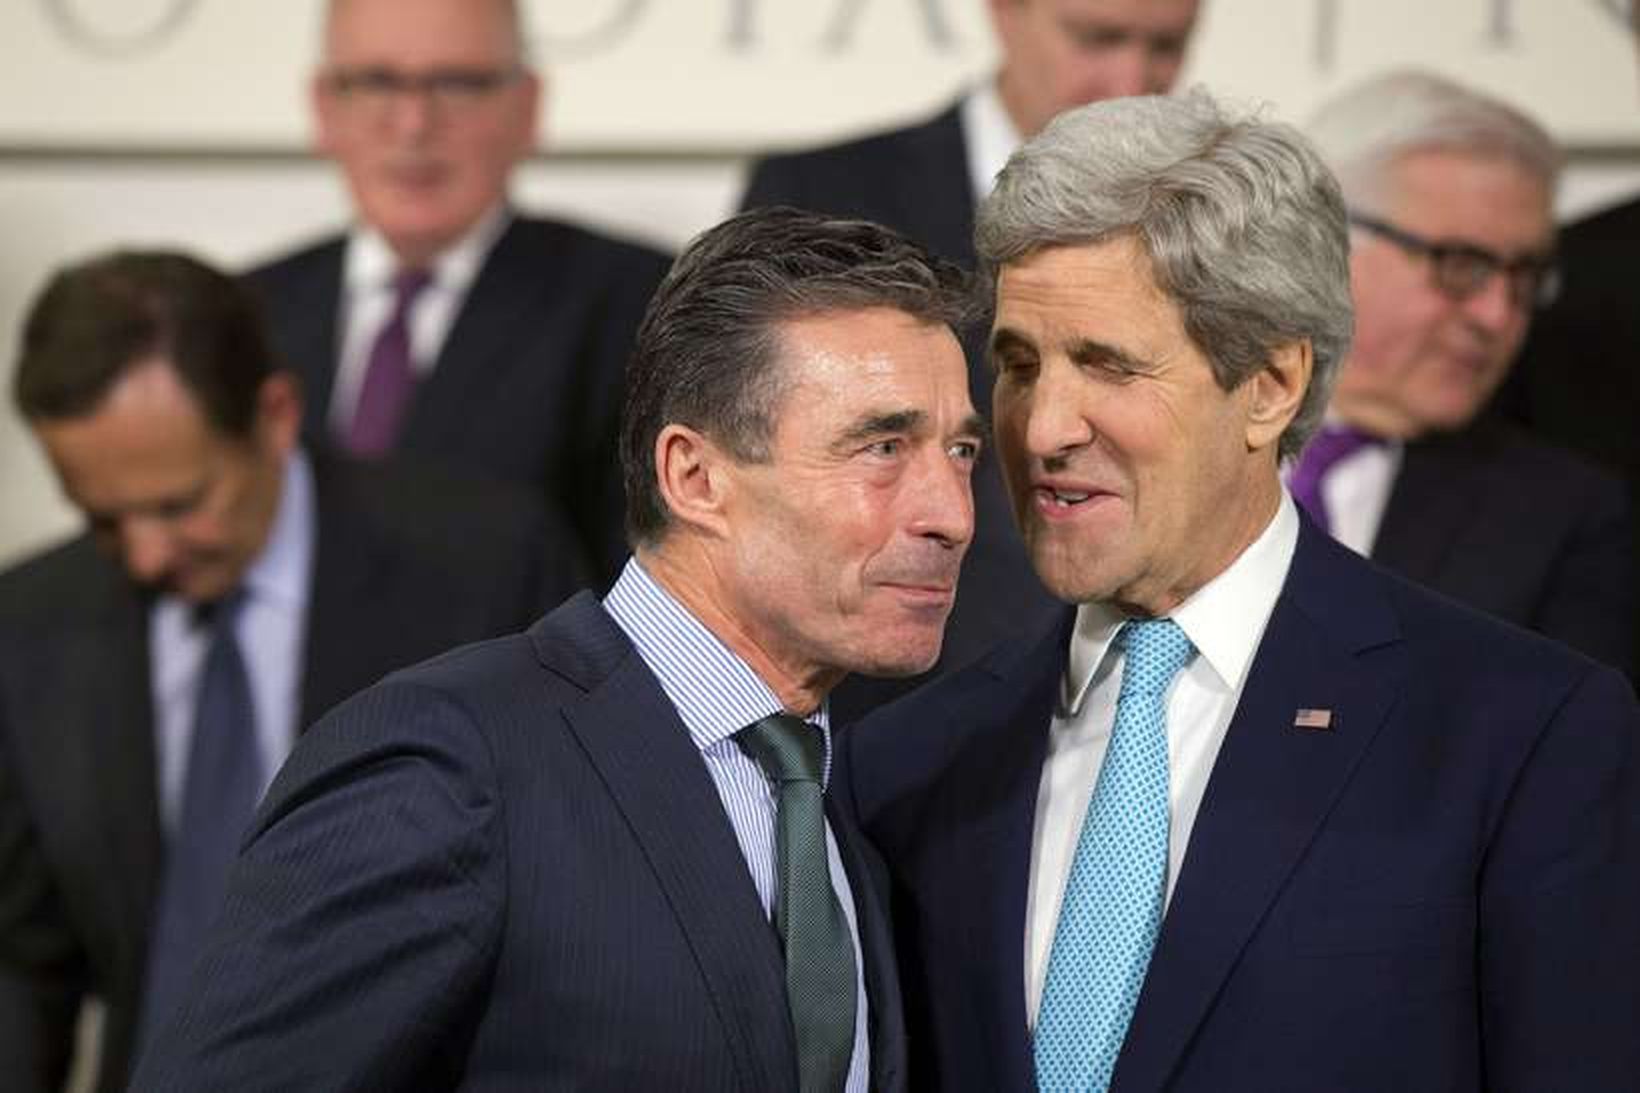 Anders Fogh Rasmussen hlýðir hér á utanríkisráðherra Bandaríkjanna John Kerry, …